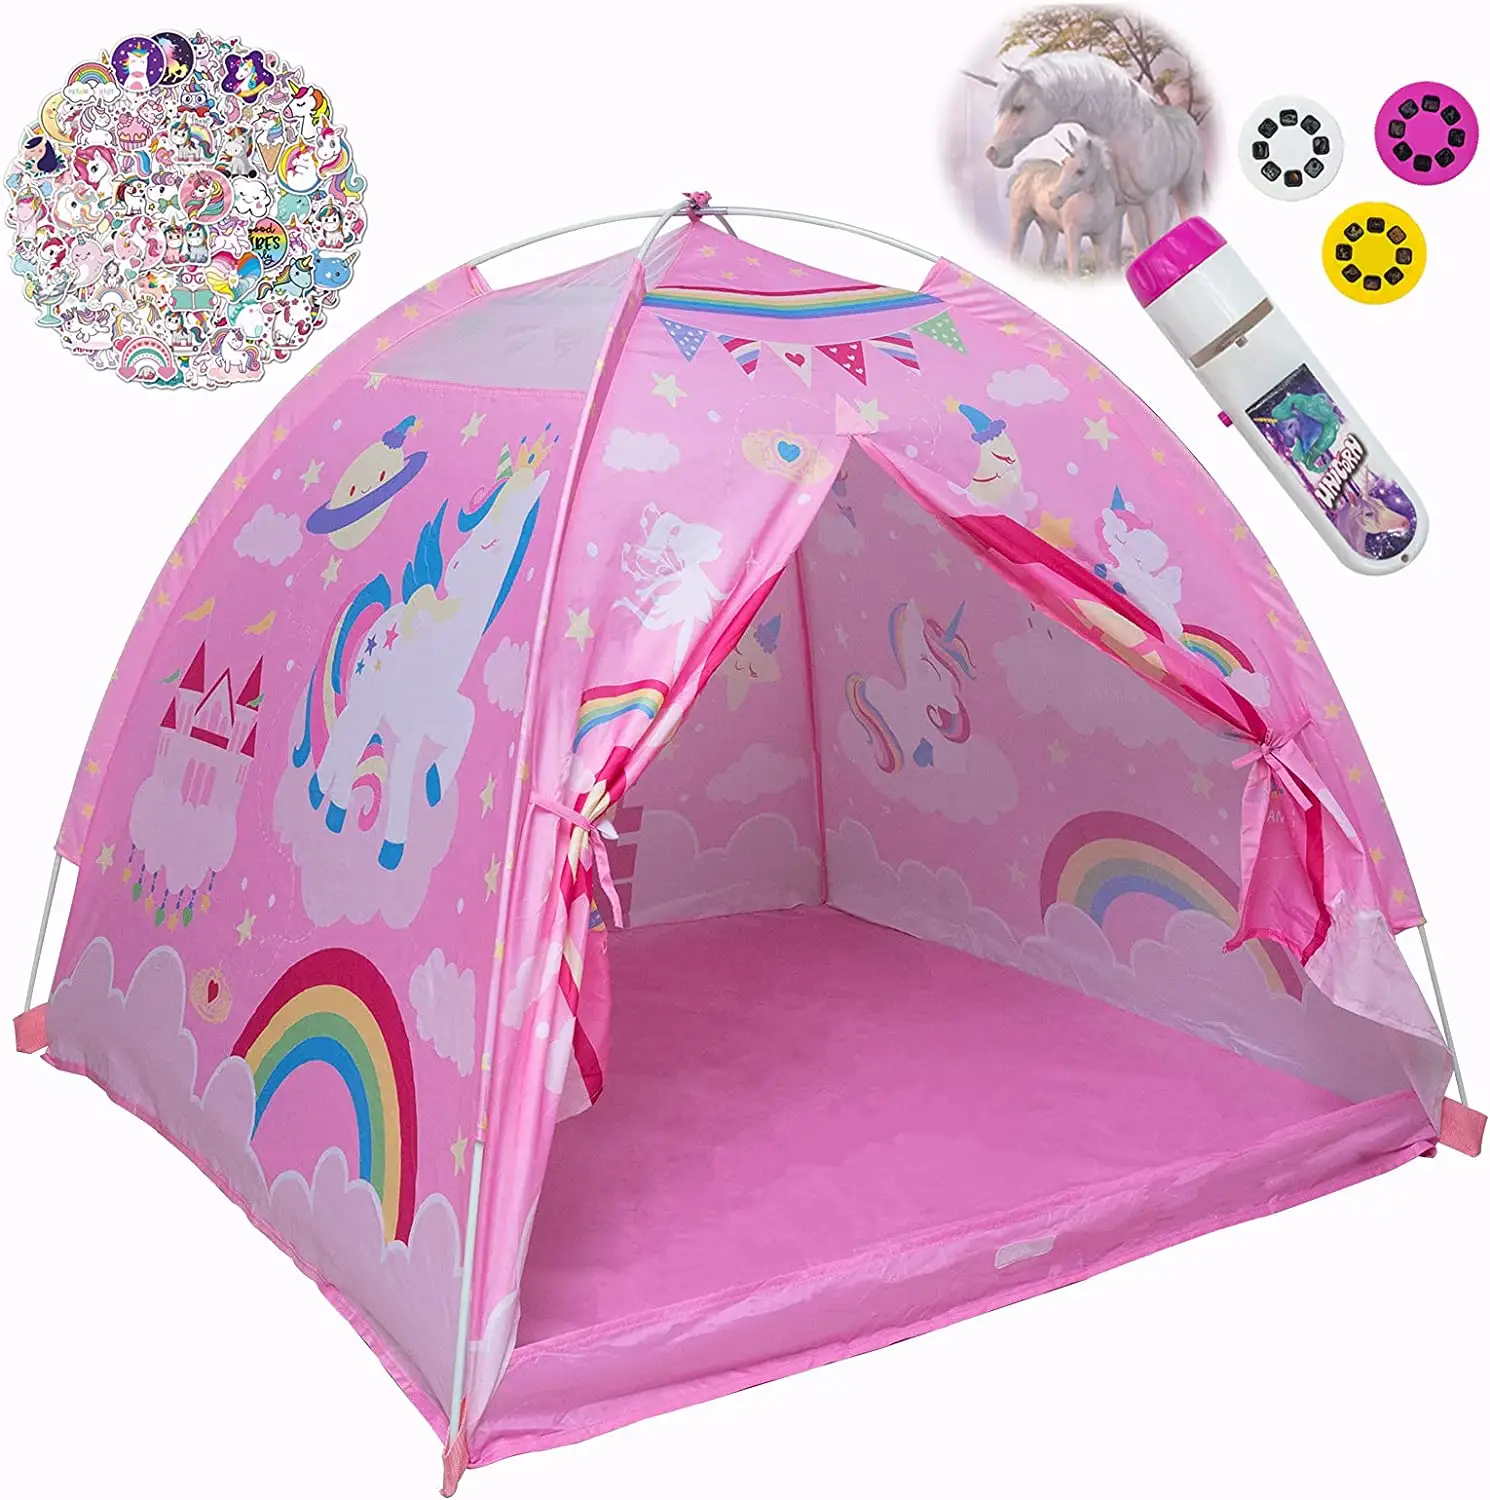 Tente pour enfants, maison de jeux intérieure en dôme de princesse pour filles, cadeaux imaginatifs parfaits pour enfants